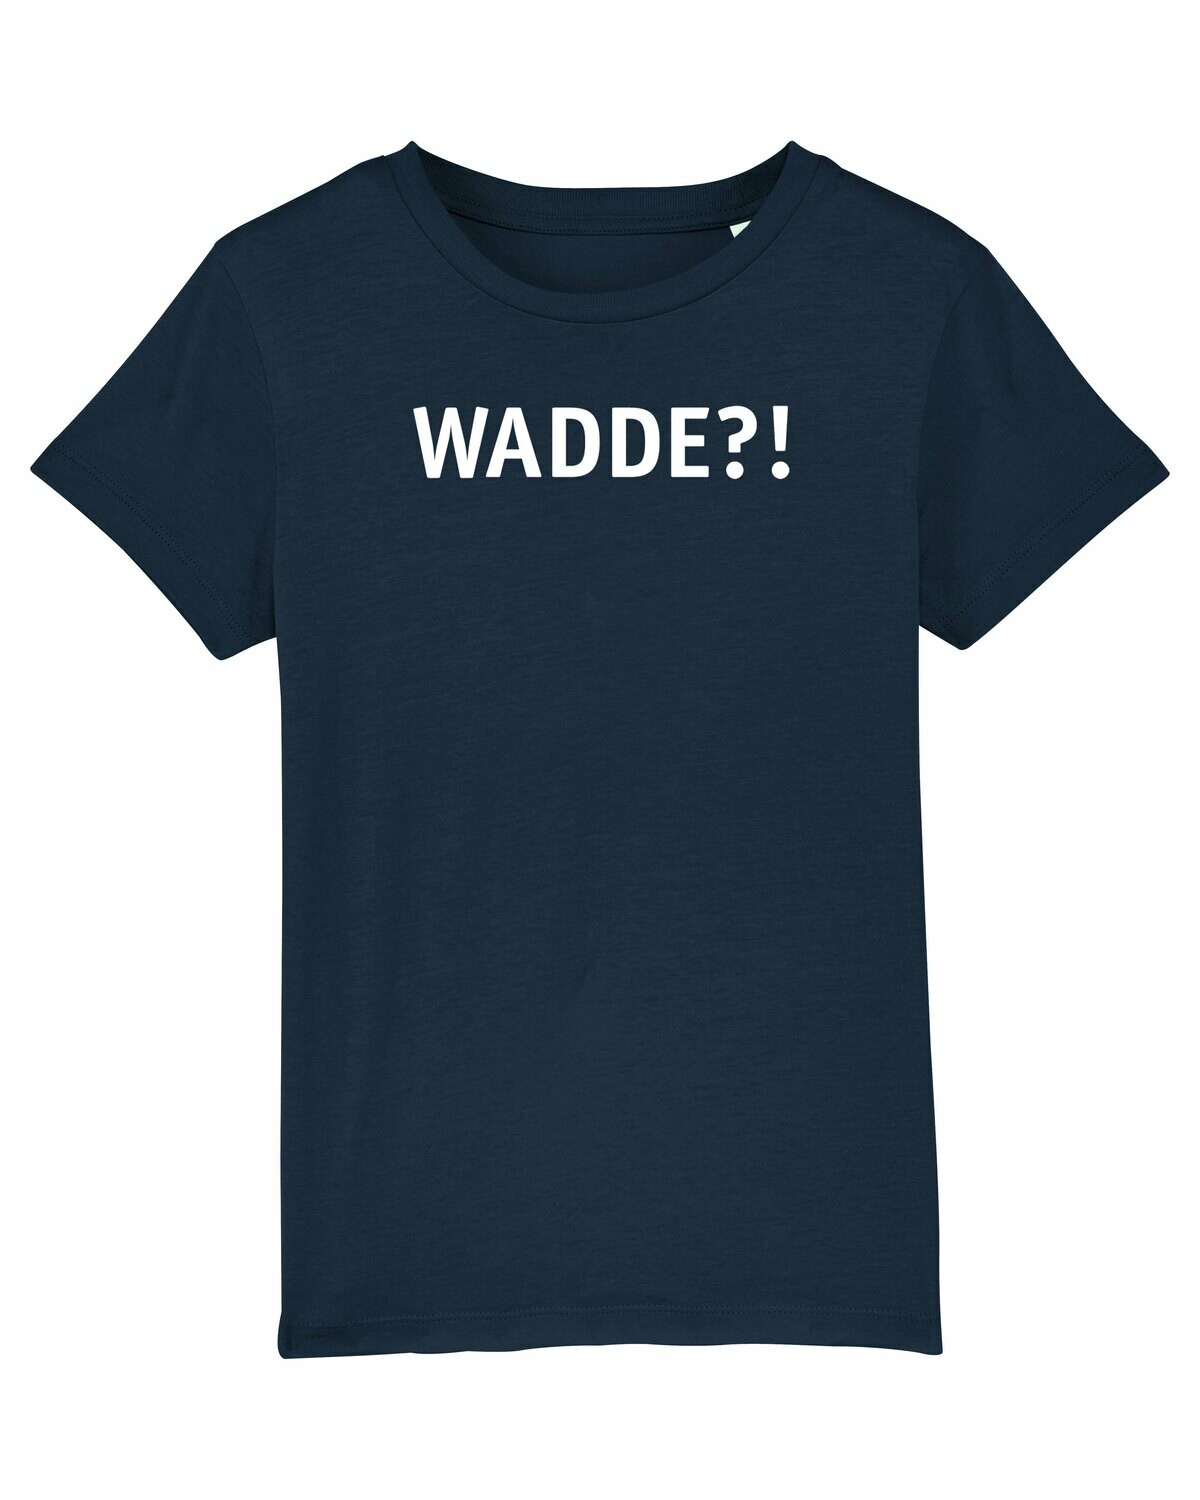 Kids T-shirt Wadde?!